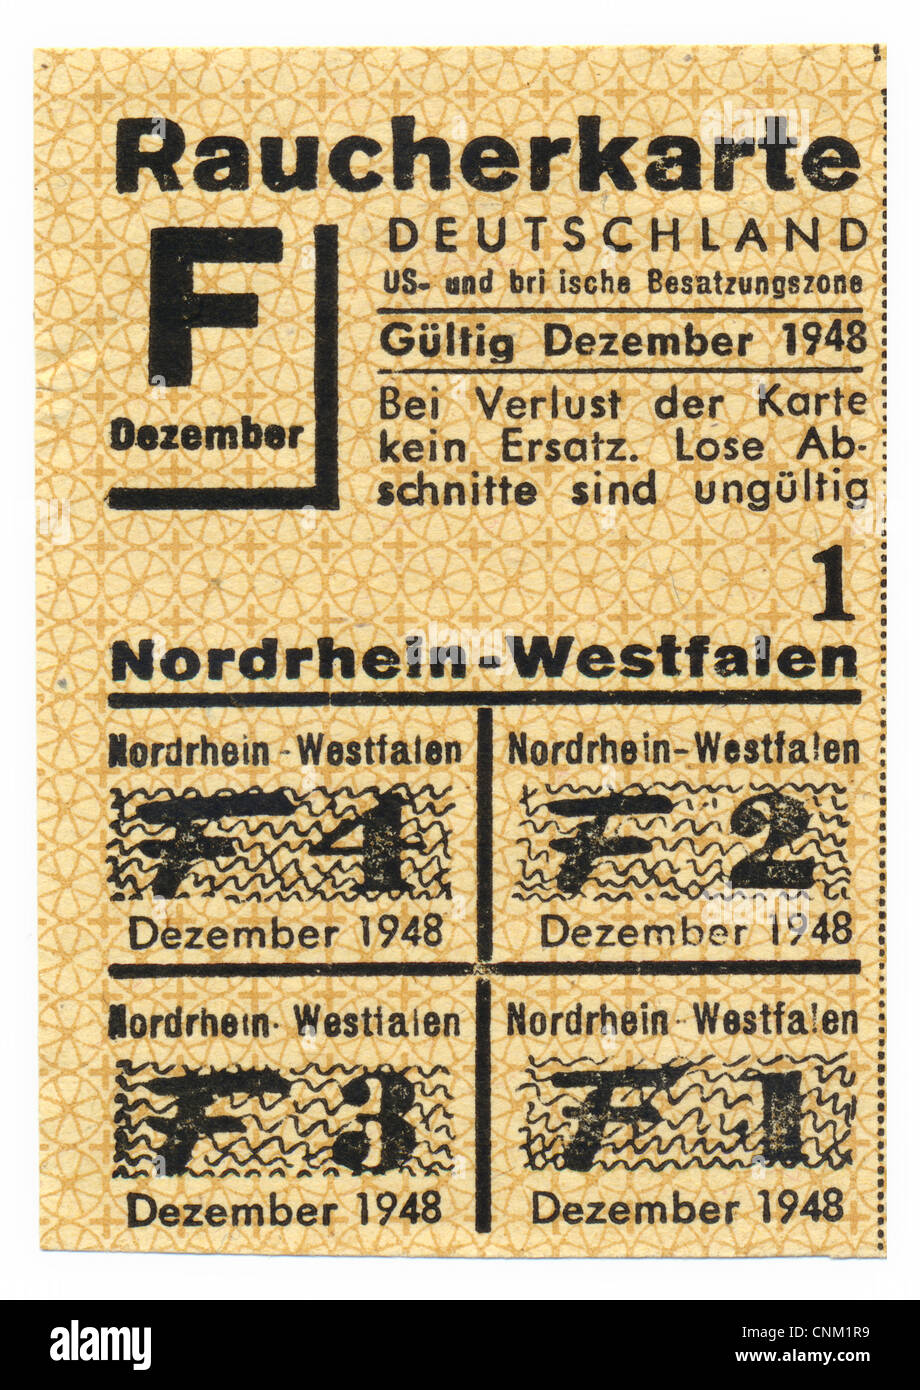 Ration Karte kaufen, Tabakwaren, Raucher Rationierungskarte von 1948, amerikanische und britische Besatzungszone, Deutschland, Europa Stockfoto